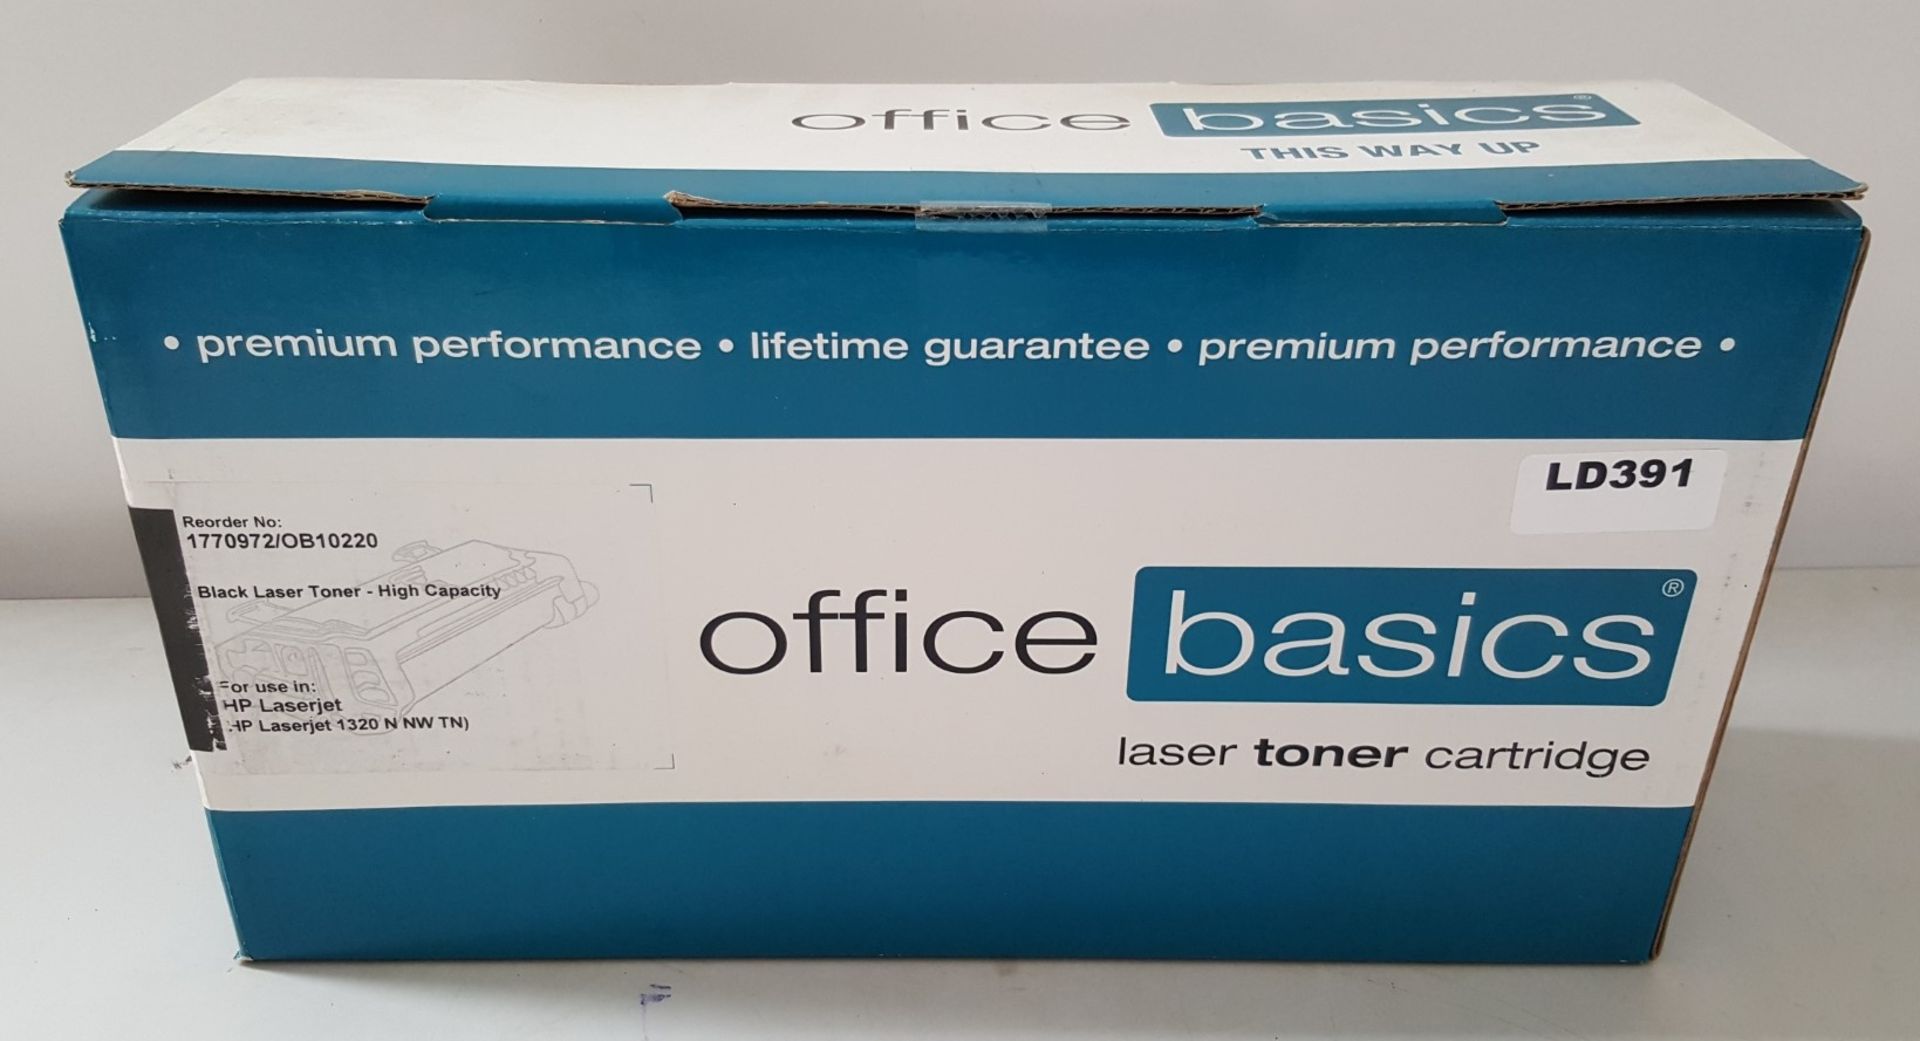 1 x Office Basics Black Laser Toner Cartridge - Ref LD391